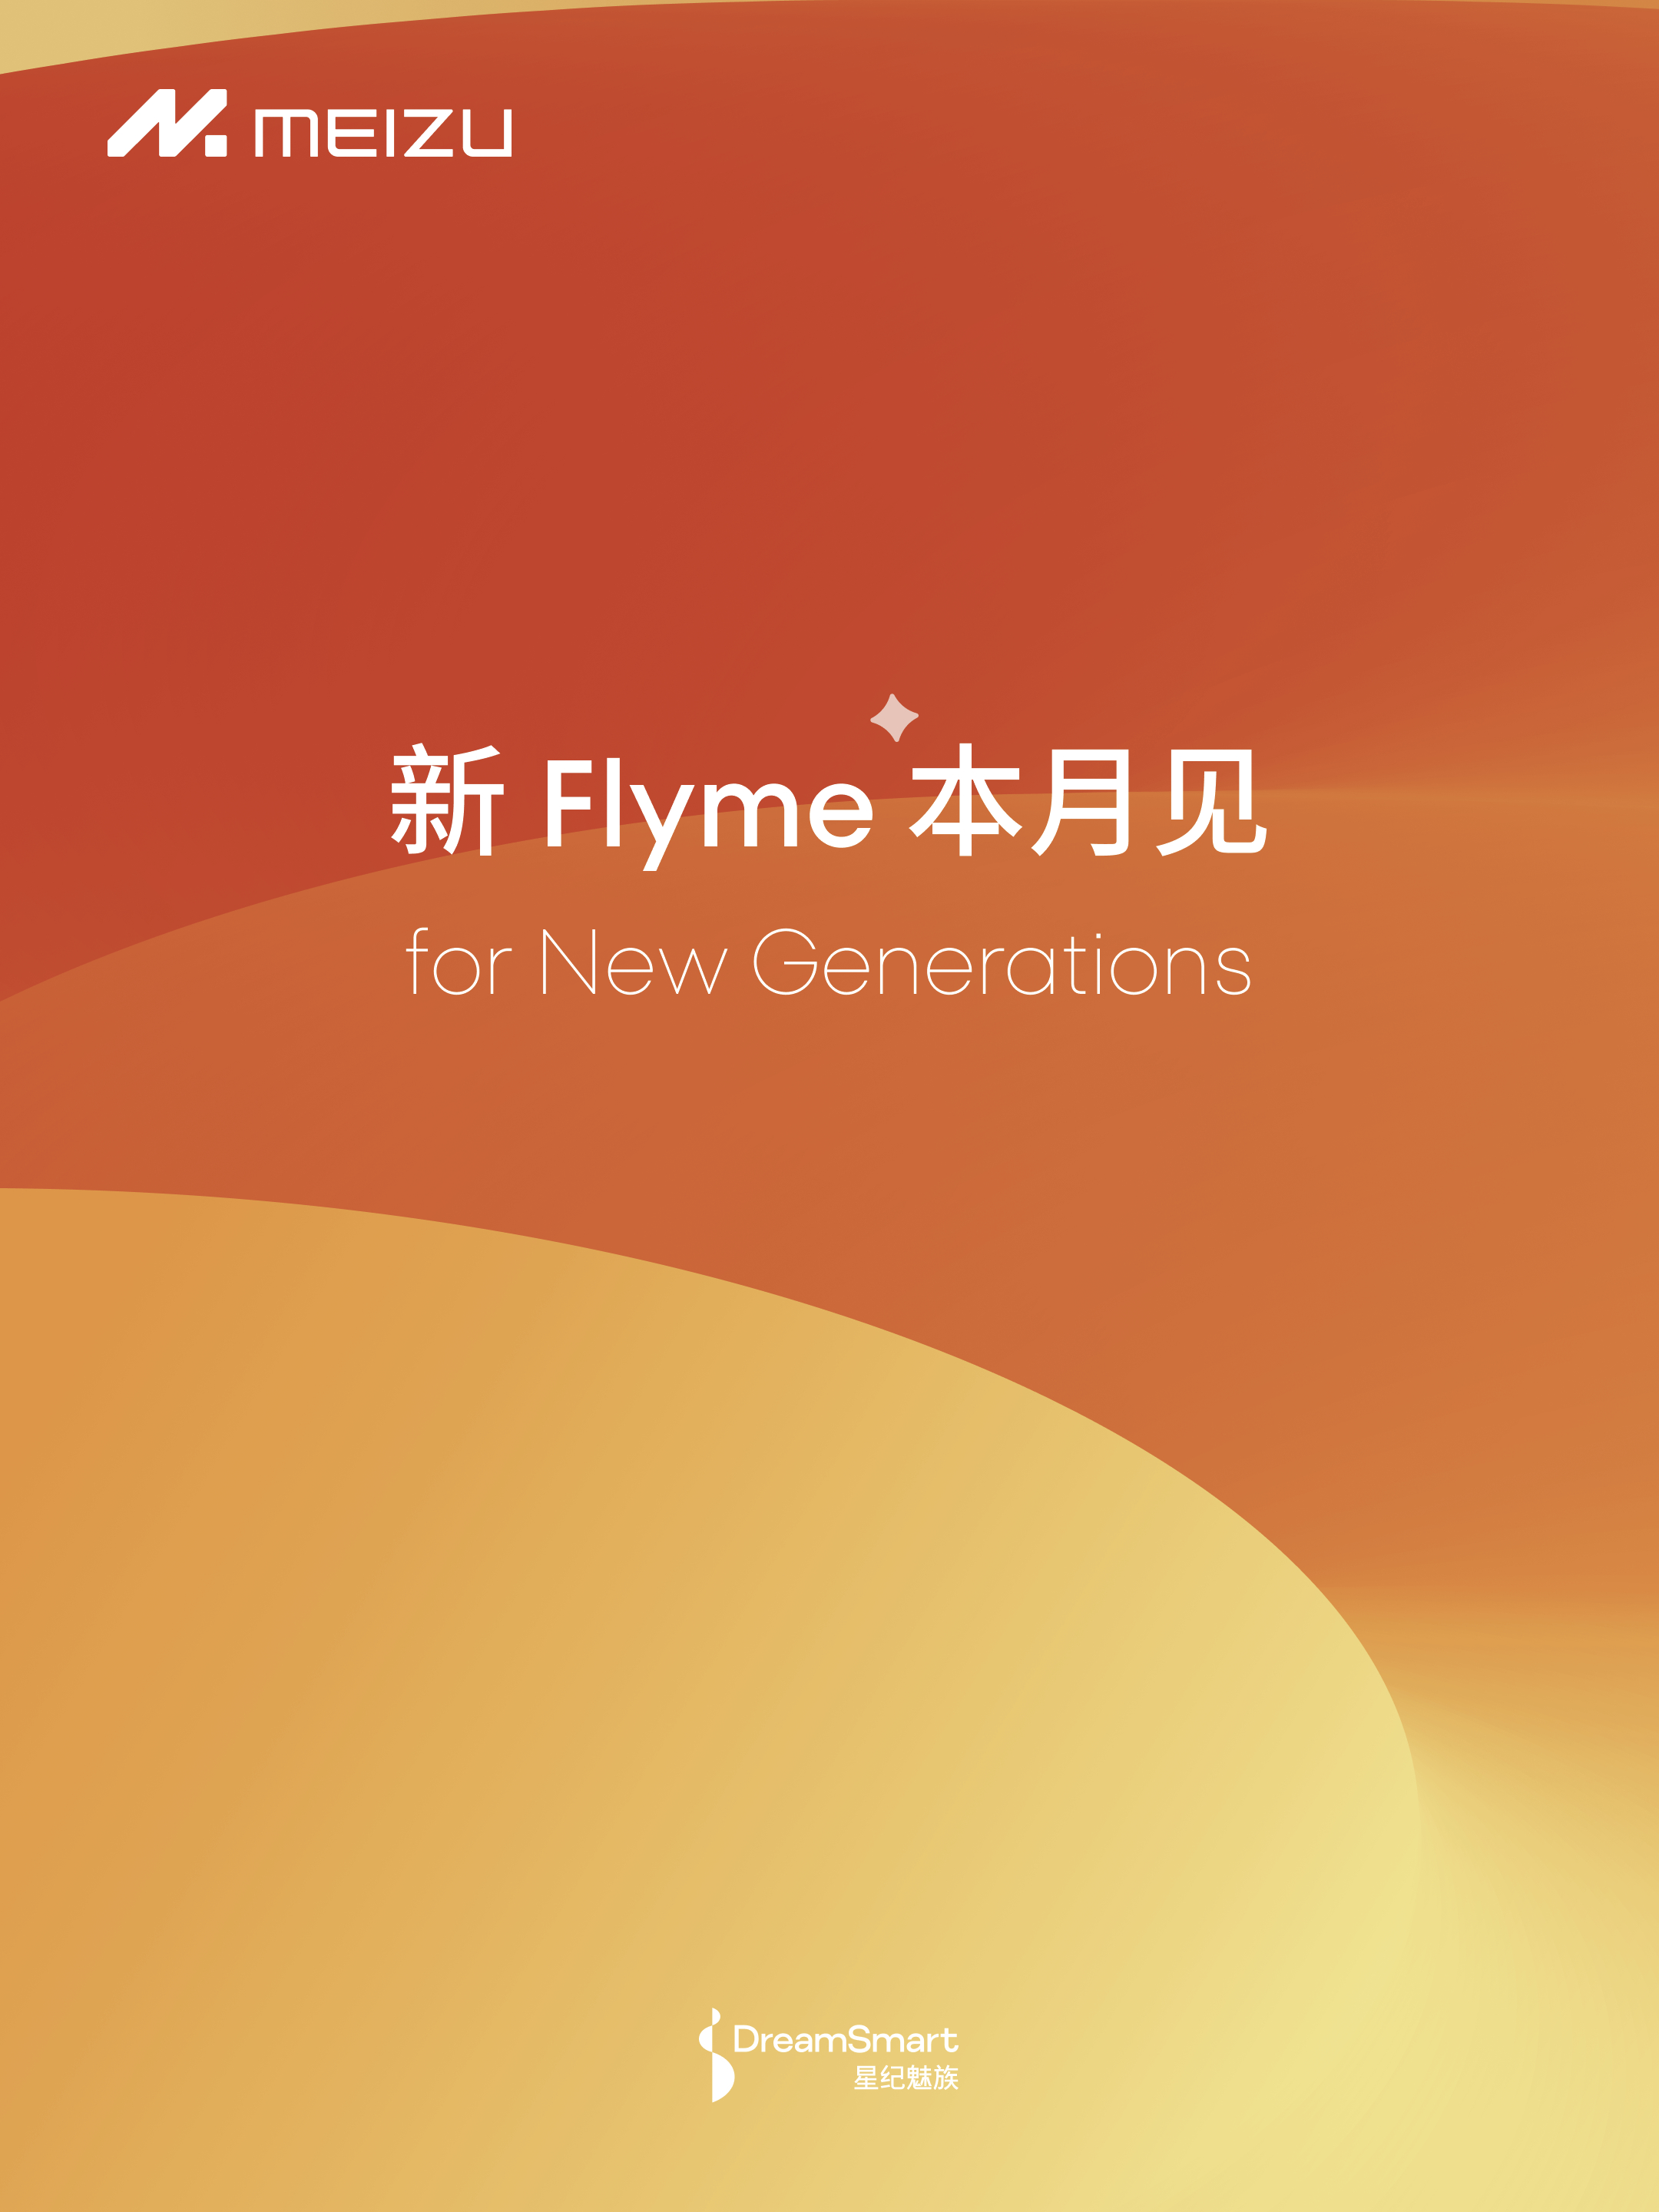 魅族官宣新品发布会，Flyme AIOS成最大主角？